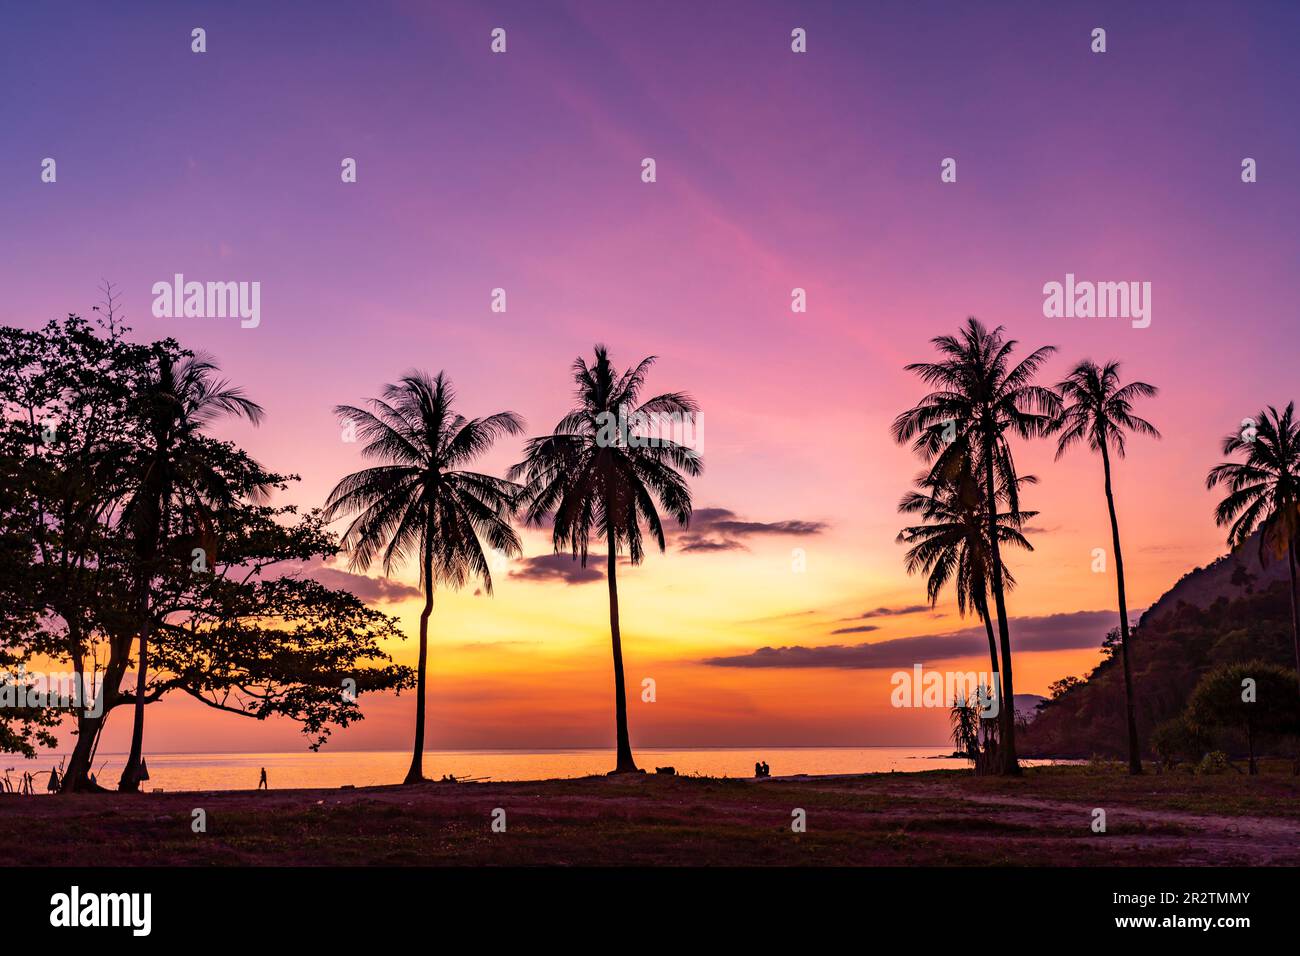 Sonnenuntergang am Strand Farang oder Charlie Beach auf der Insel Koh Mook in der Andamanensee, Thailand, Asien   |   Suset at Farang or Charlie Beach Stock Photo